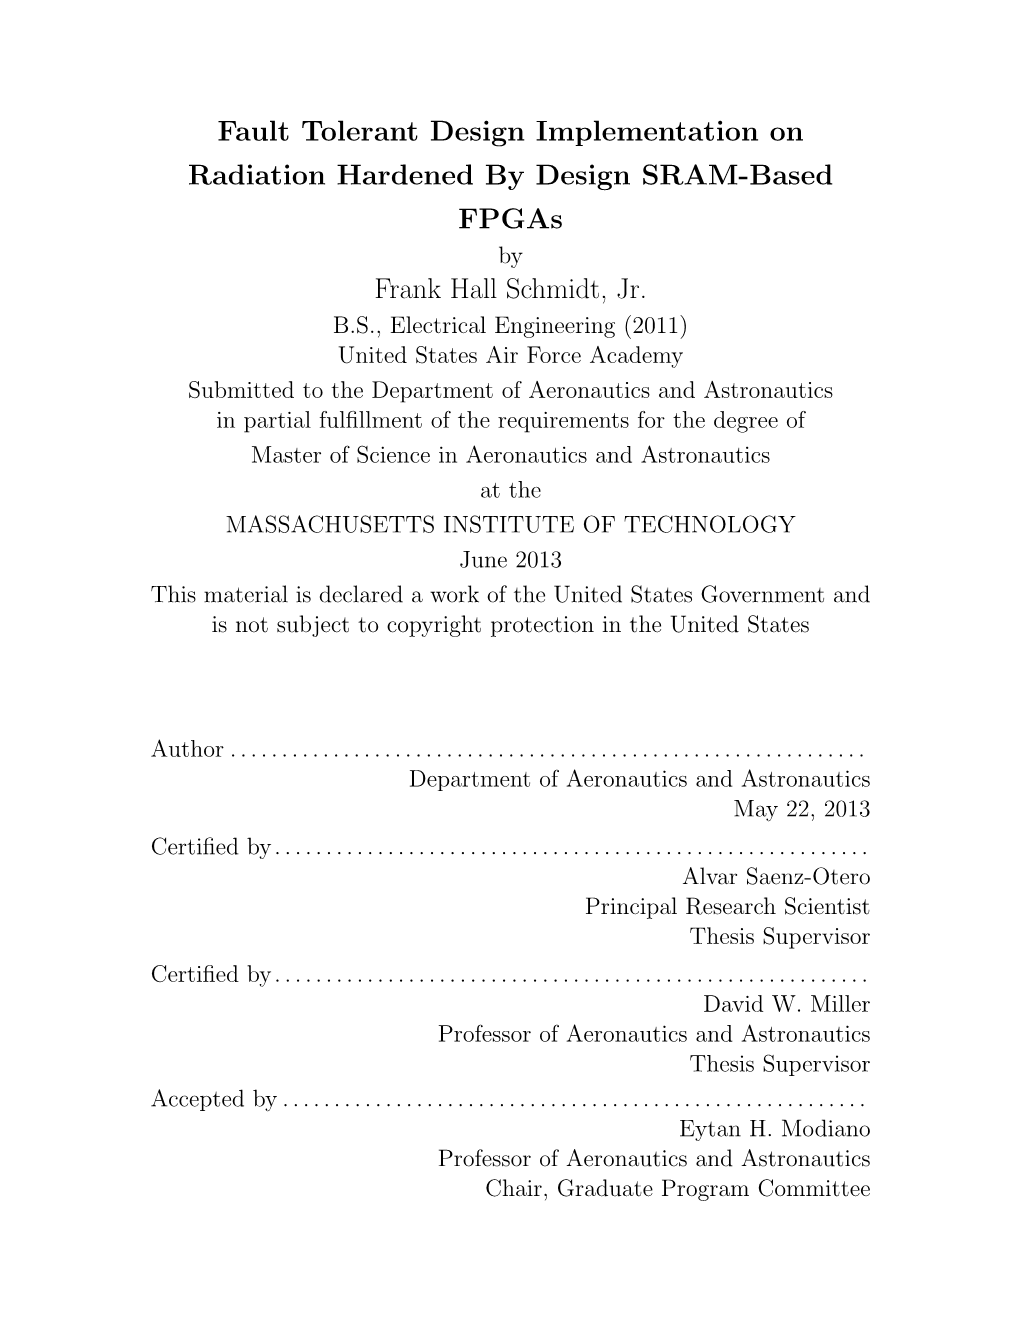 Fault Tolerant Design Implementation on Radiation Hardened by Design SRAM-Based Fpgas by Frank Hall Schmidt, Jr